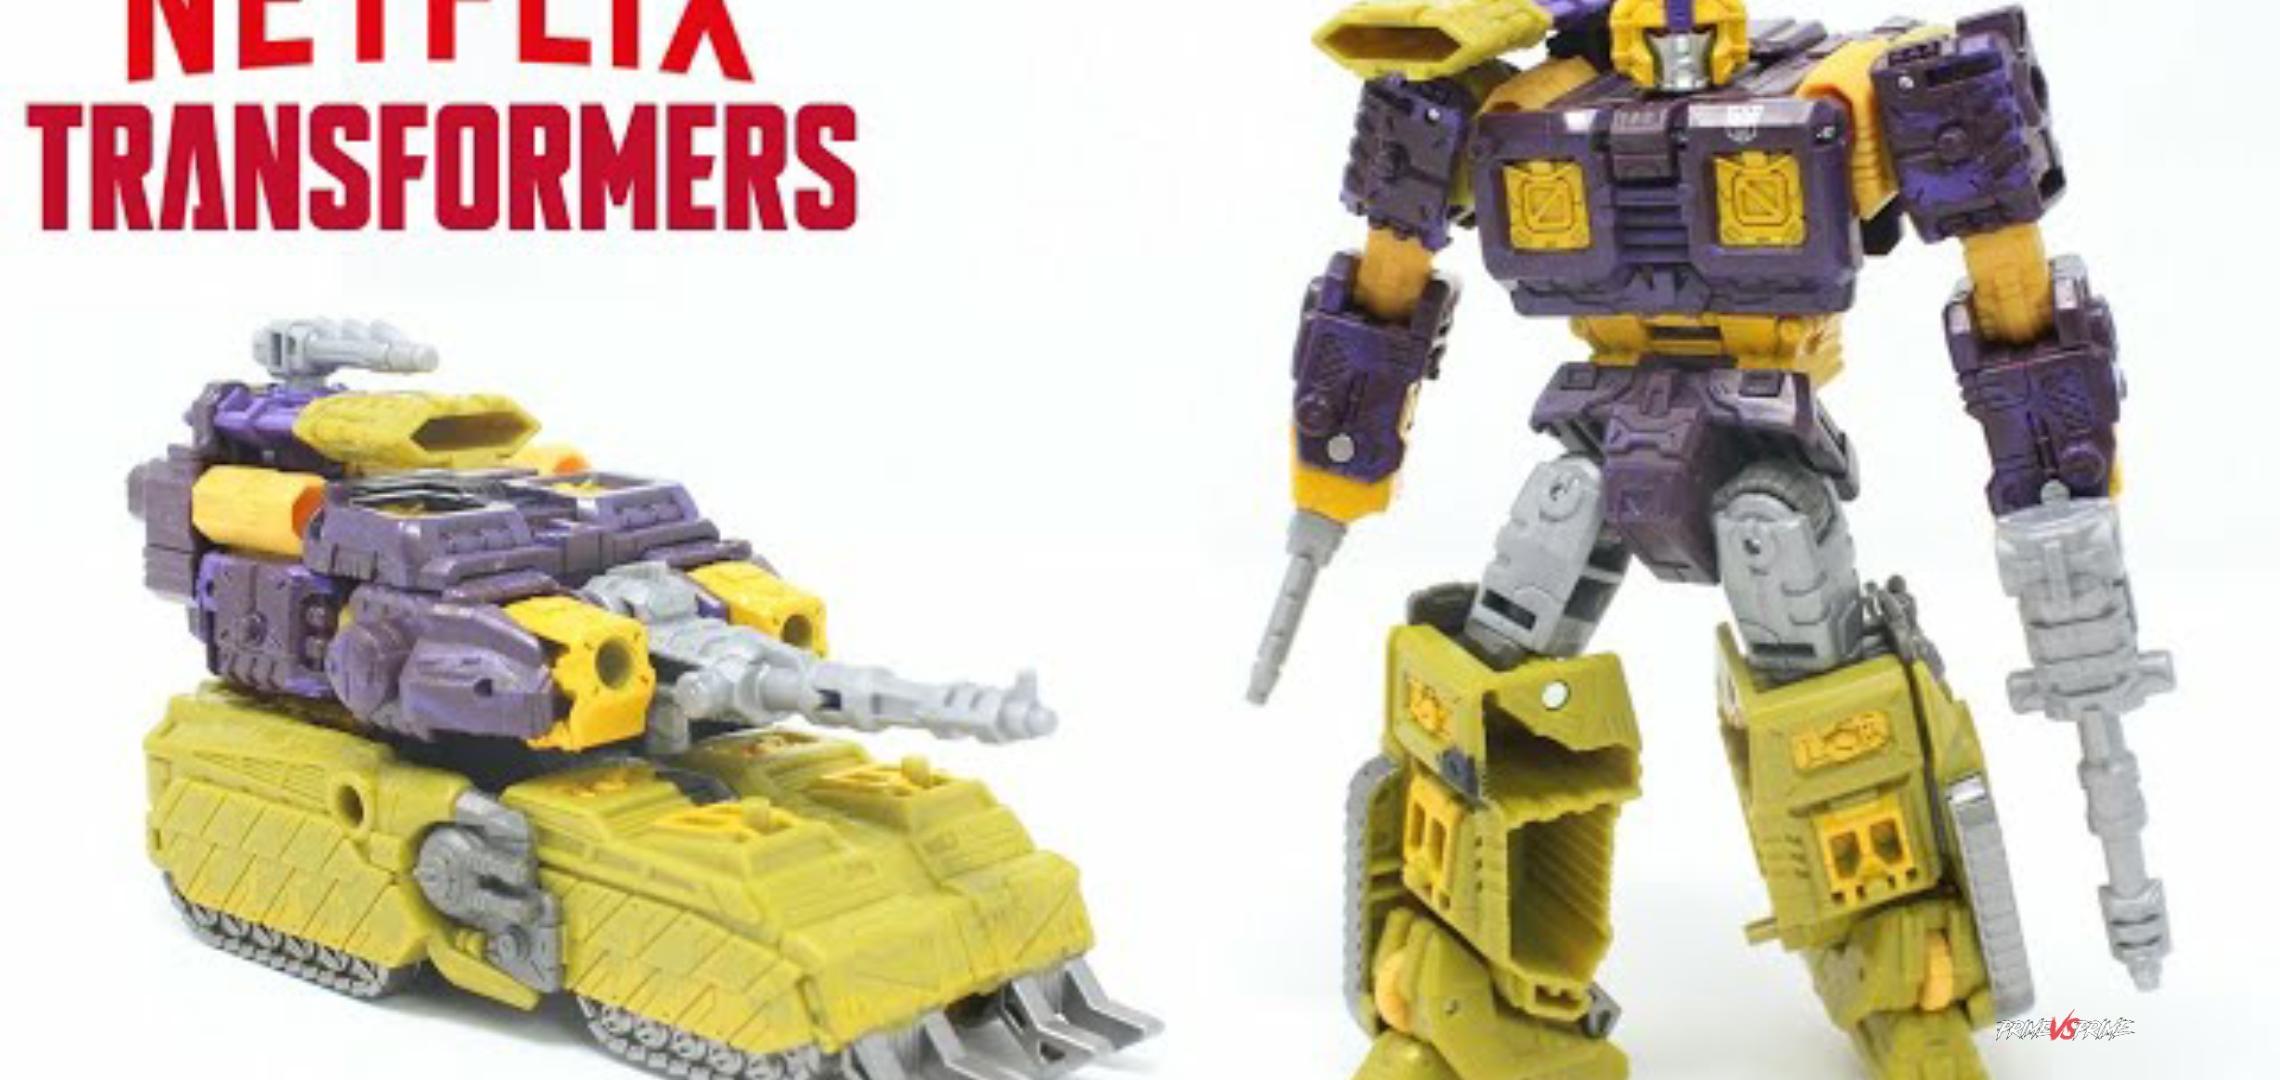 netflix transformers last knight